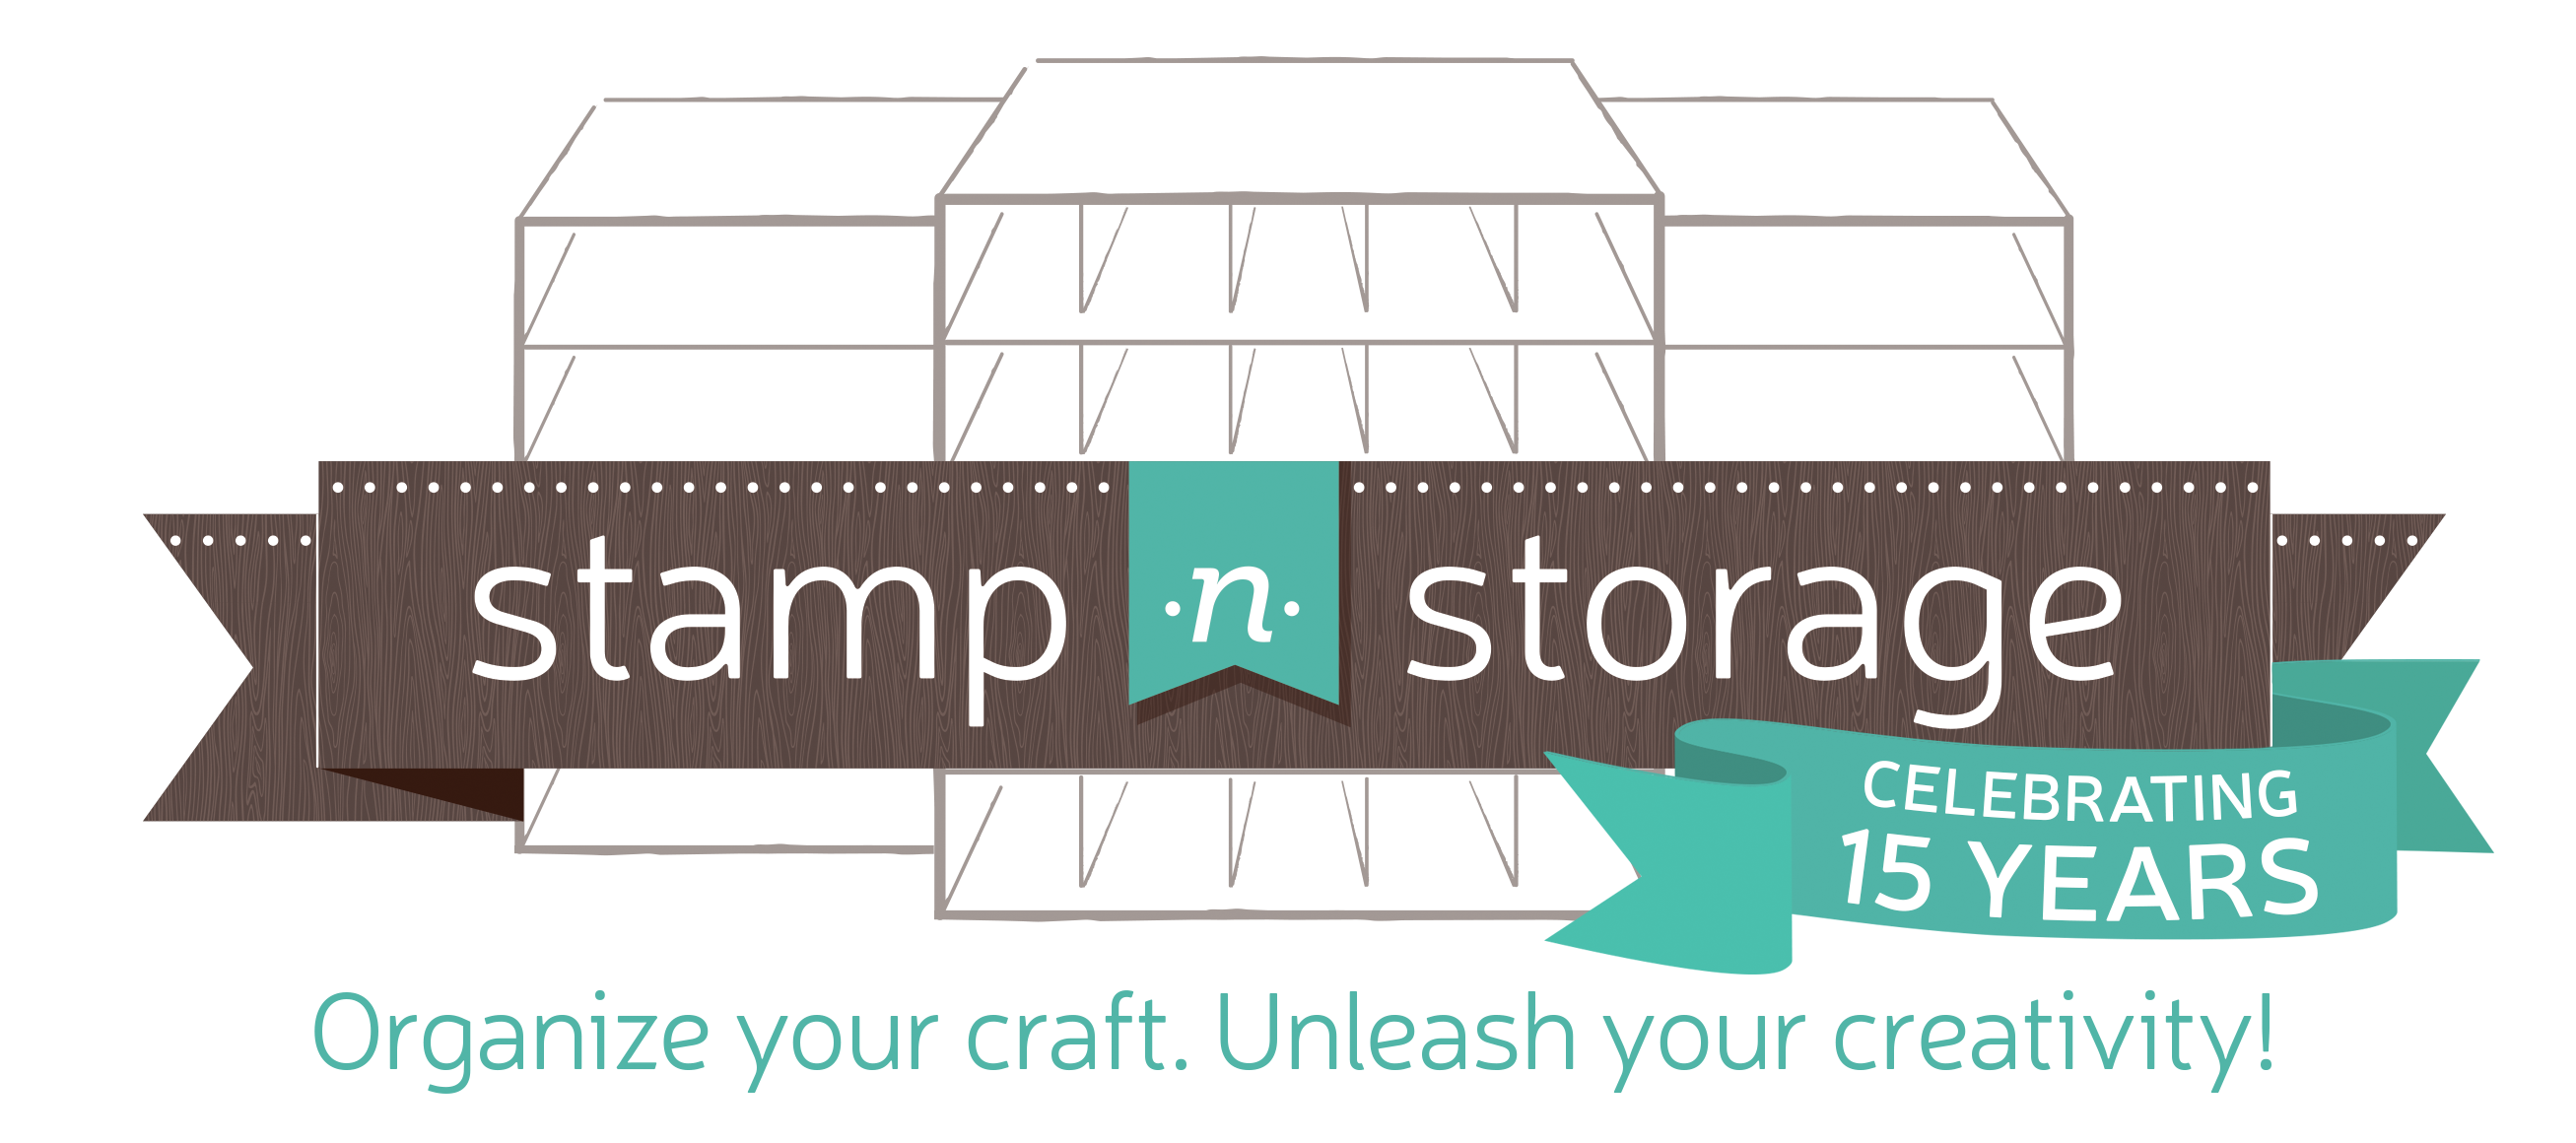 Stamp-n-Storage - We love seeing how customers layout their Stamp